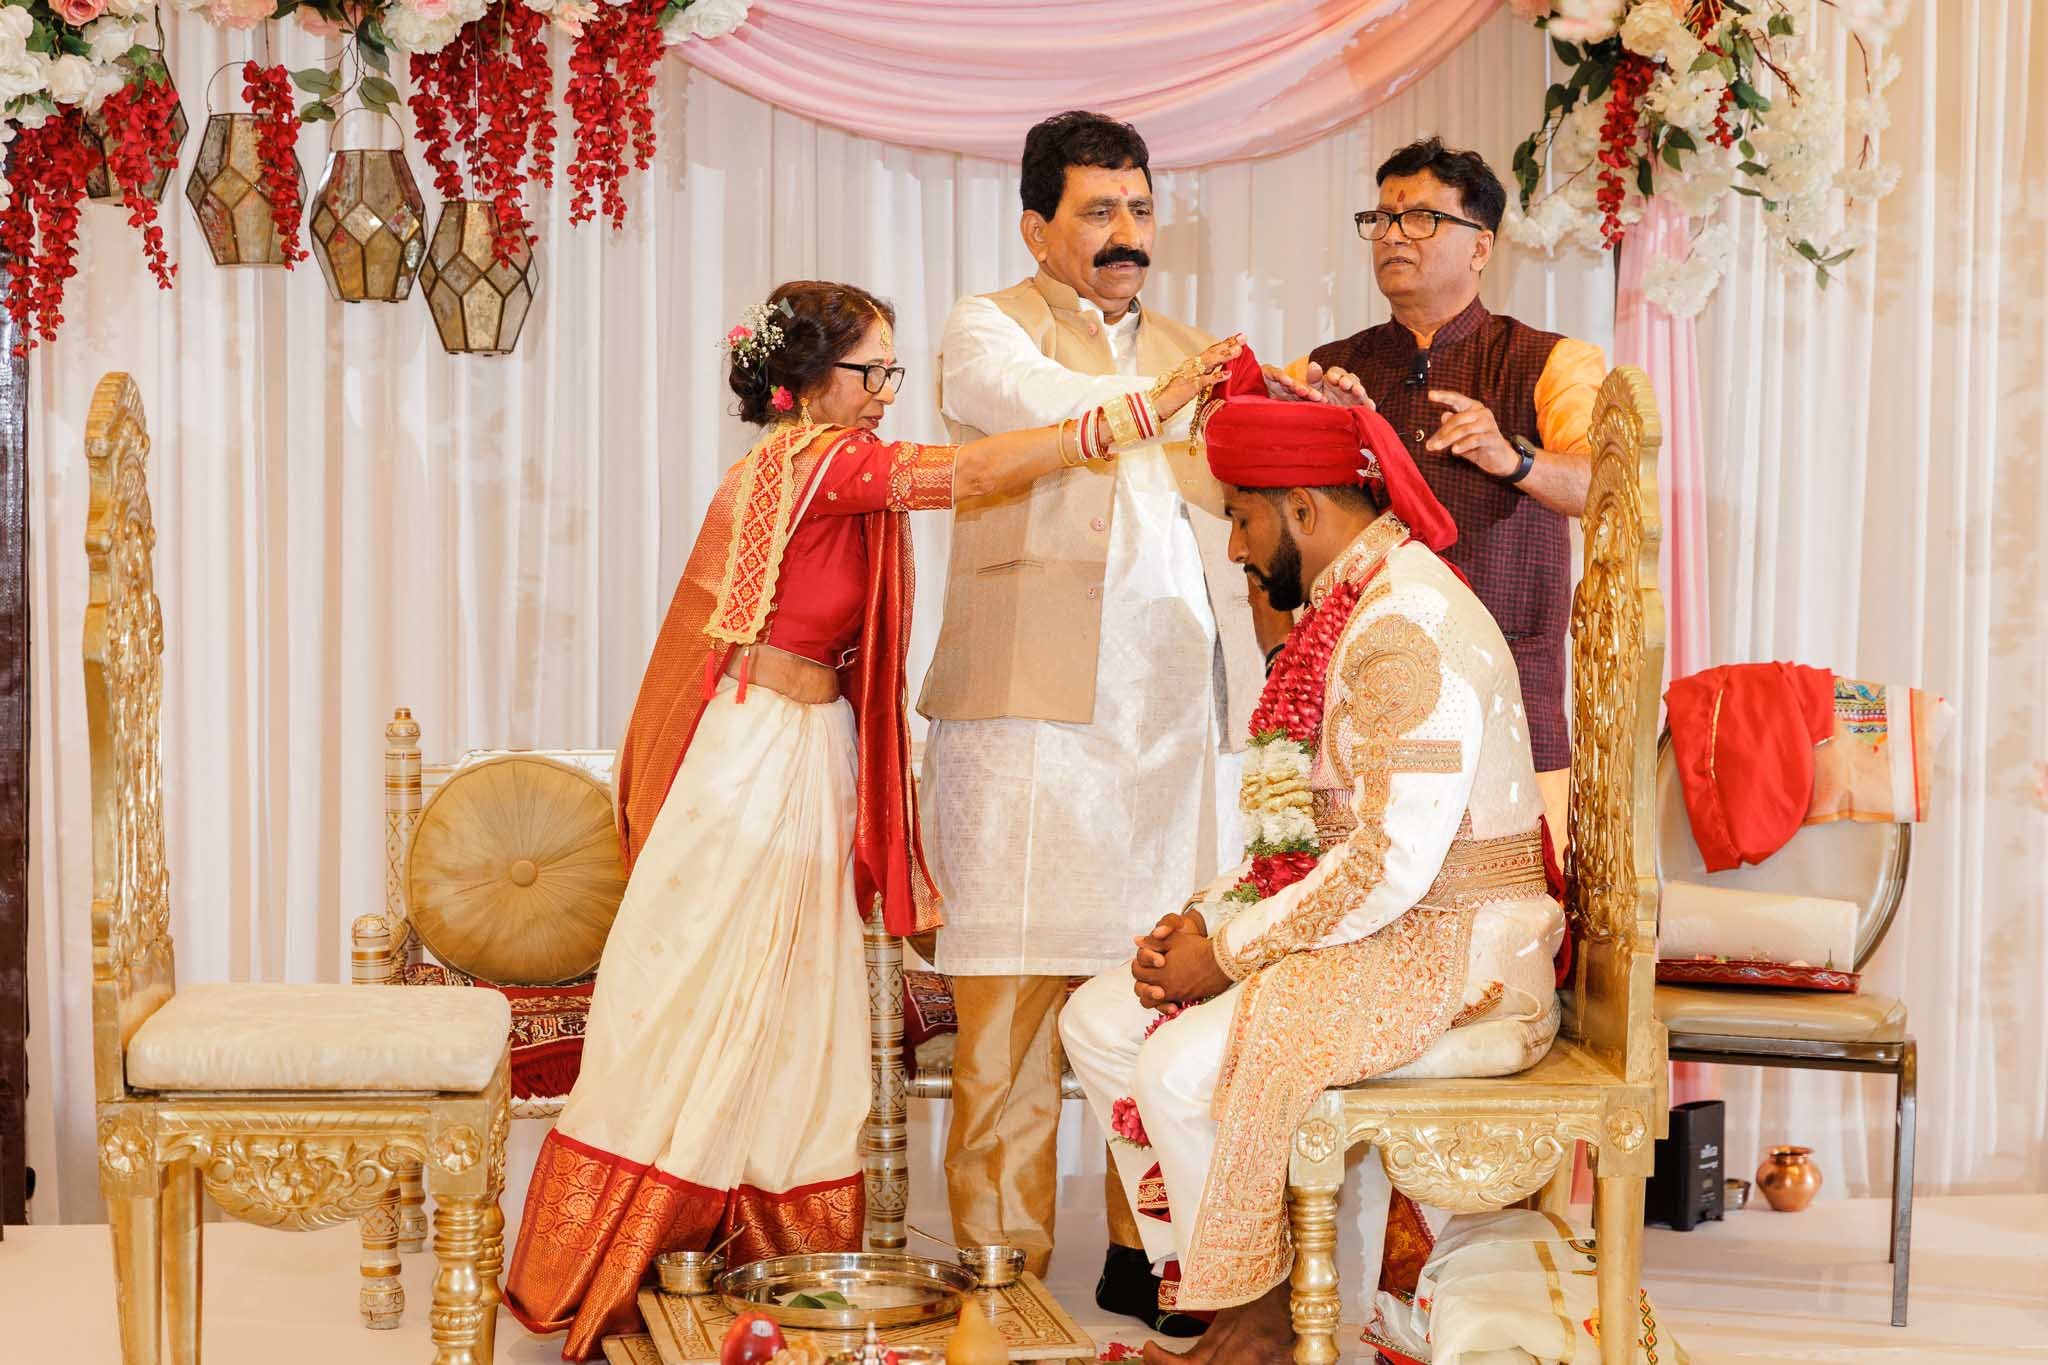 Gujarati wedding rituals